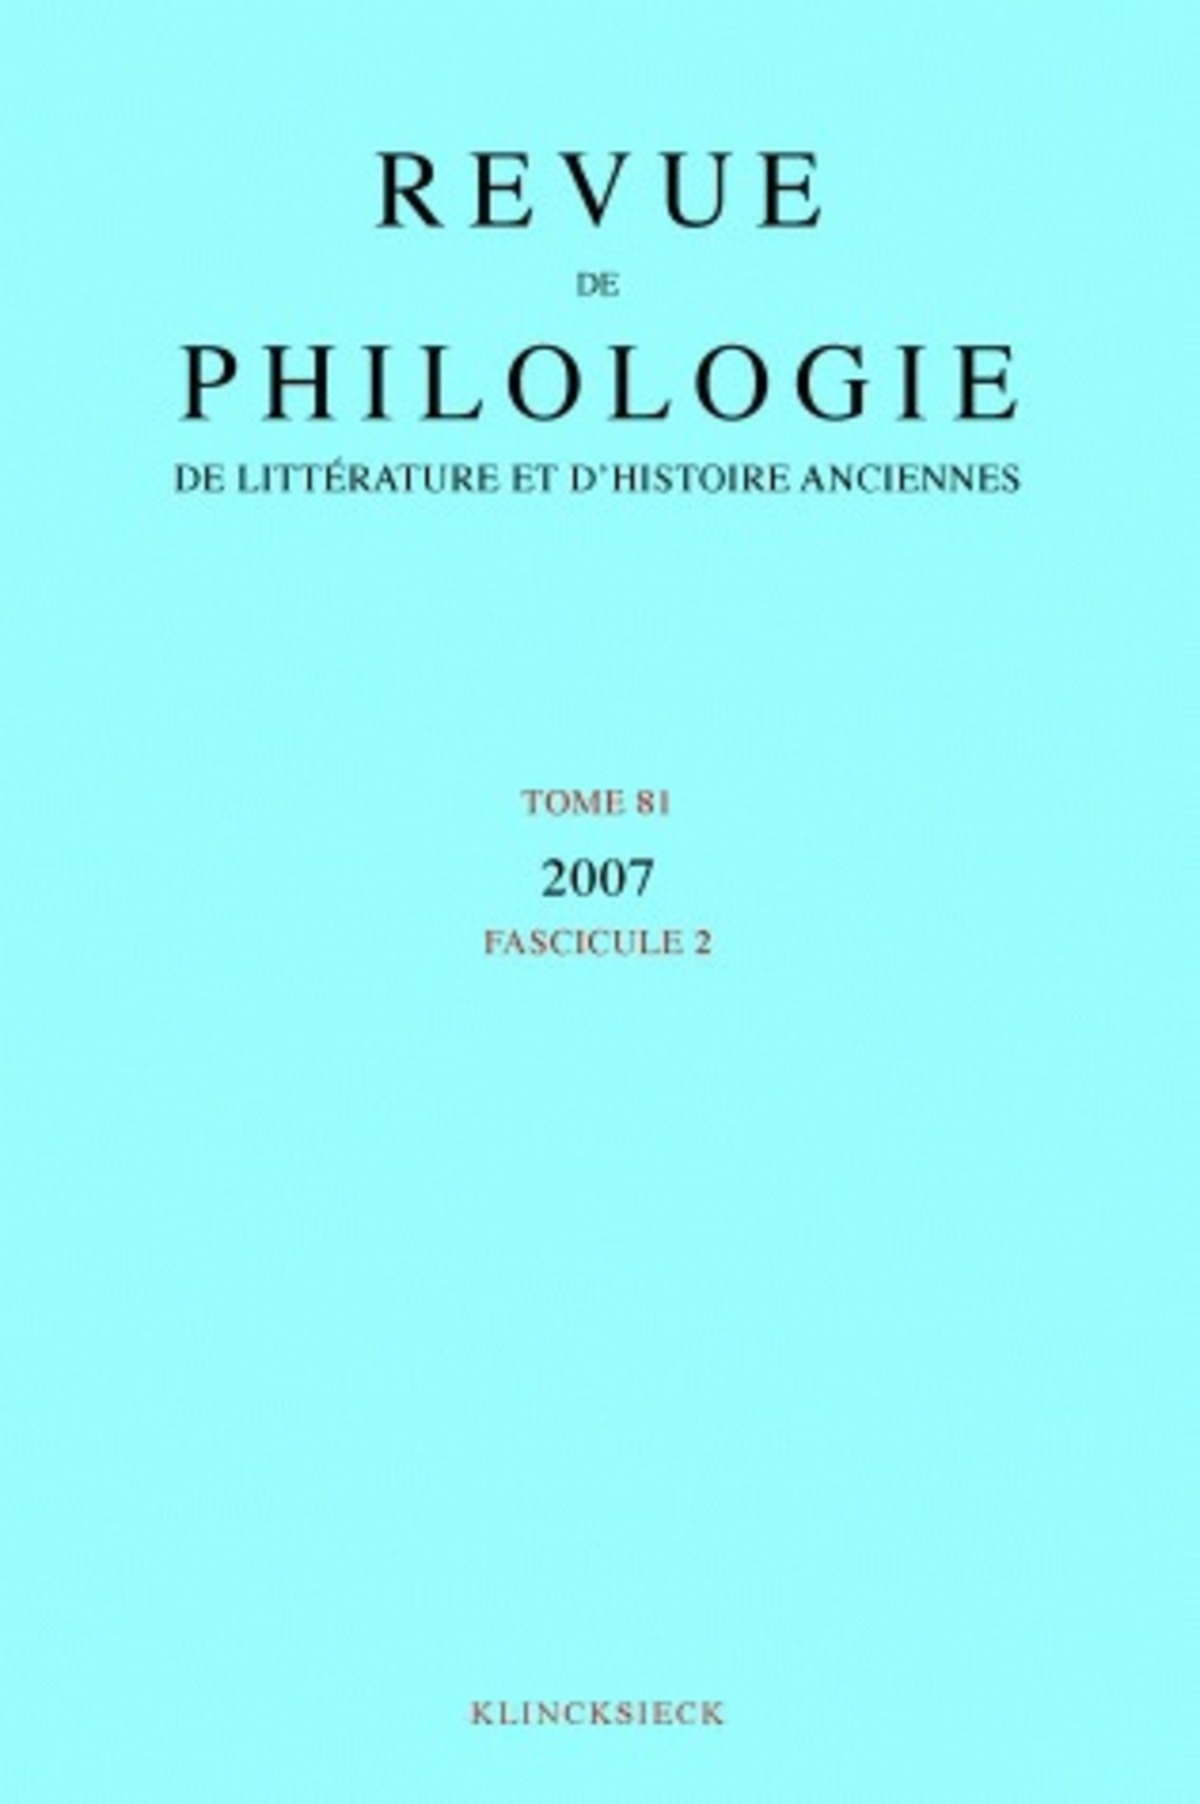 Revue de philologie, de littérature et d'histoire anciennes volume 81